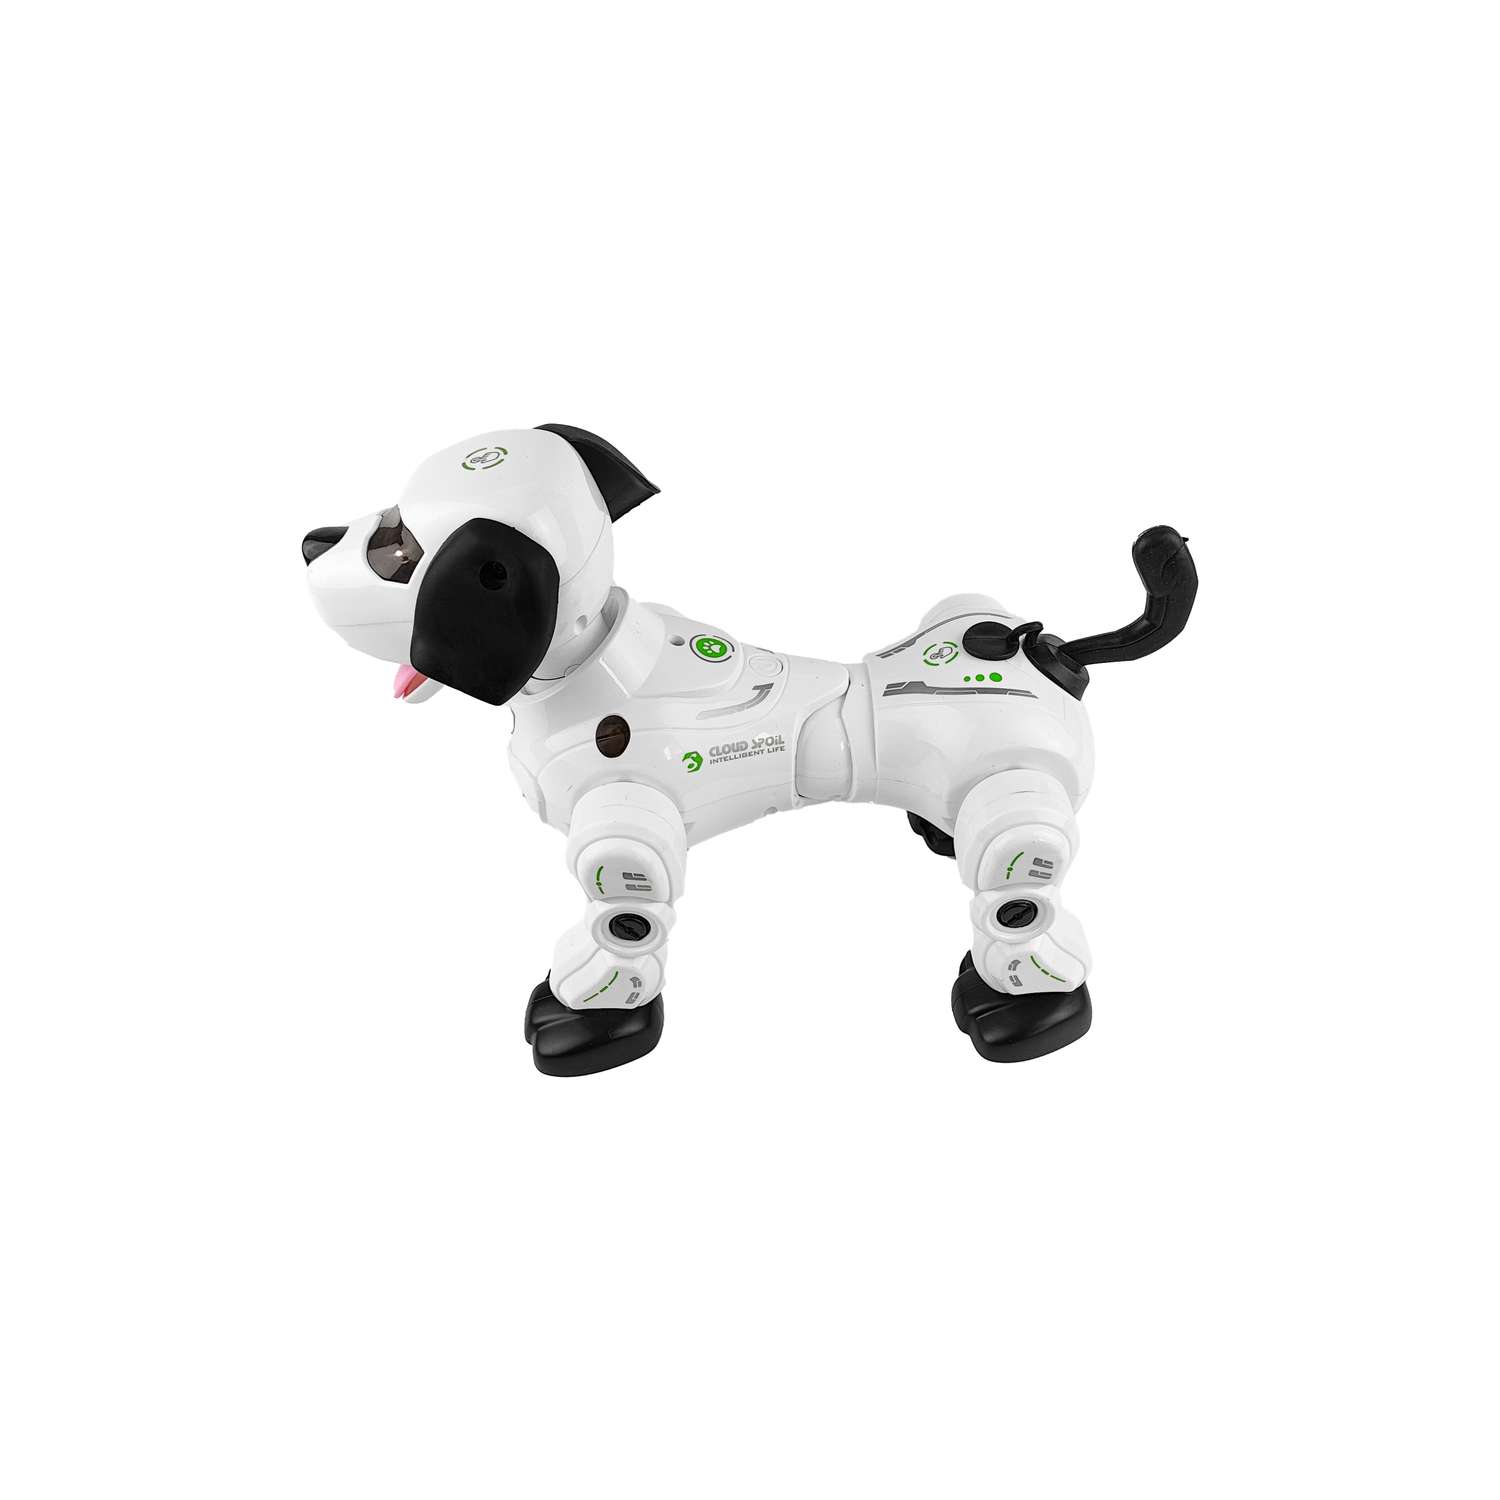 Интерактивная радиоуправляемая Happy Cow собака робот - фото 2